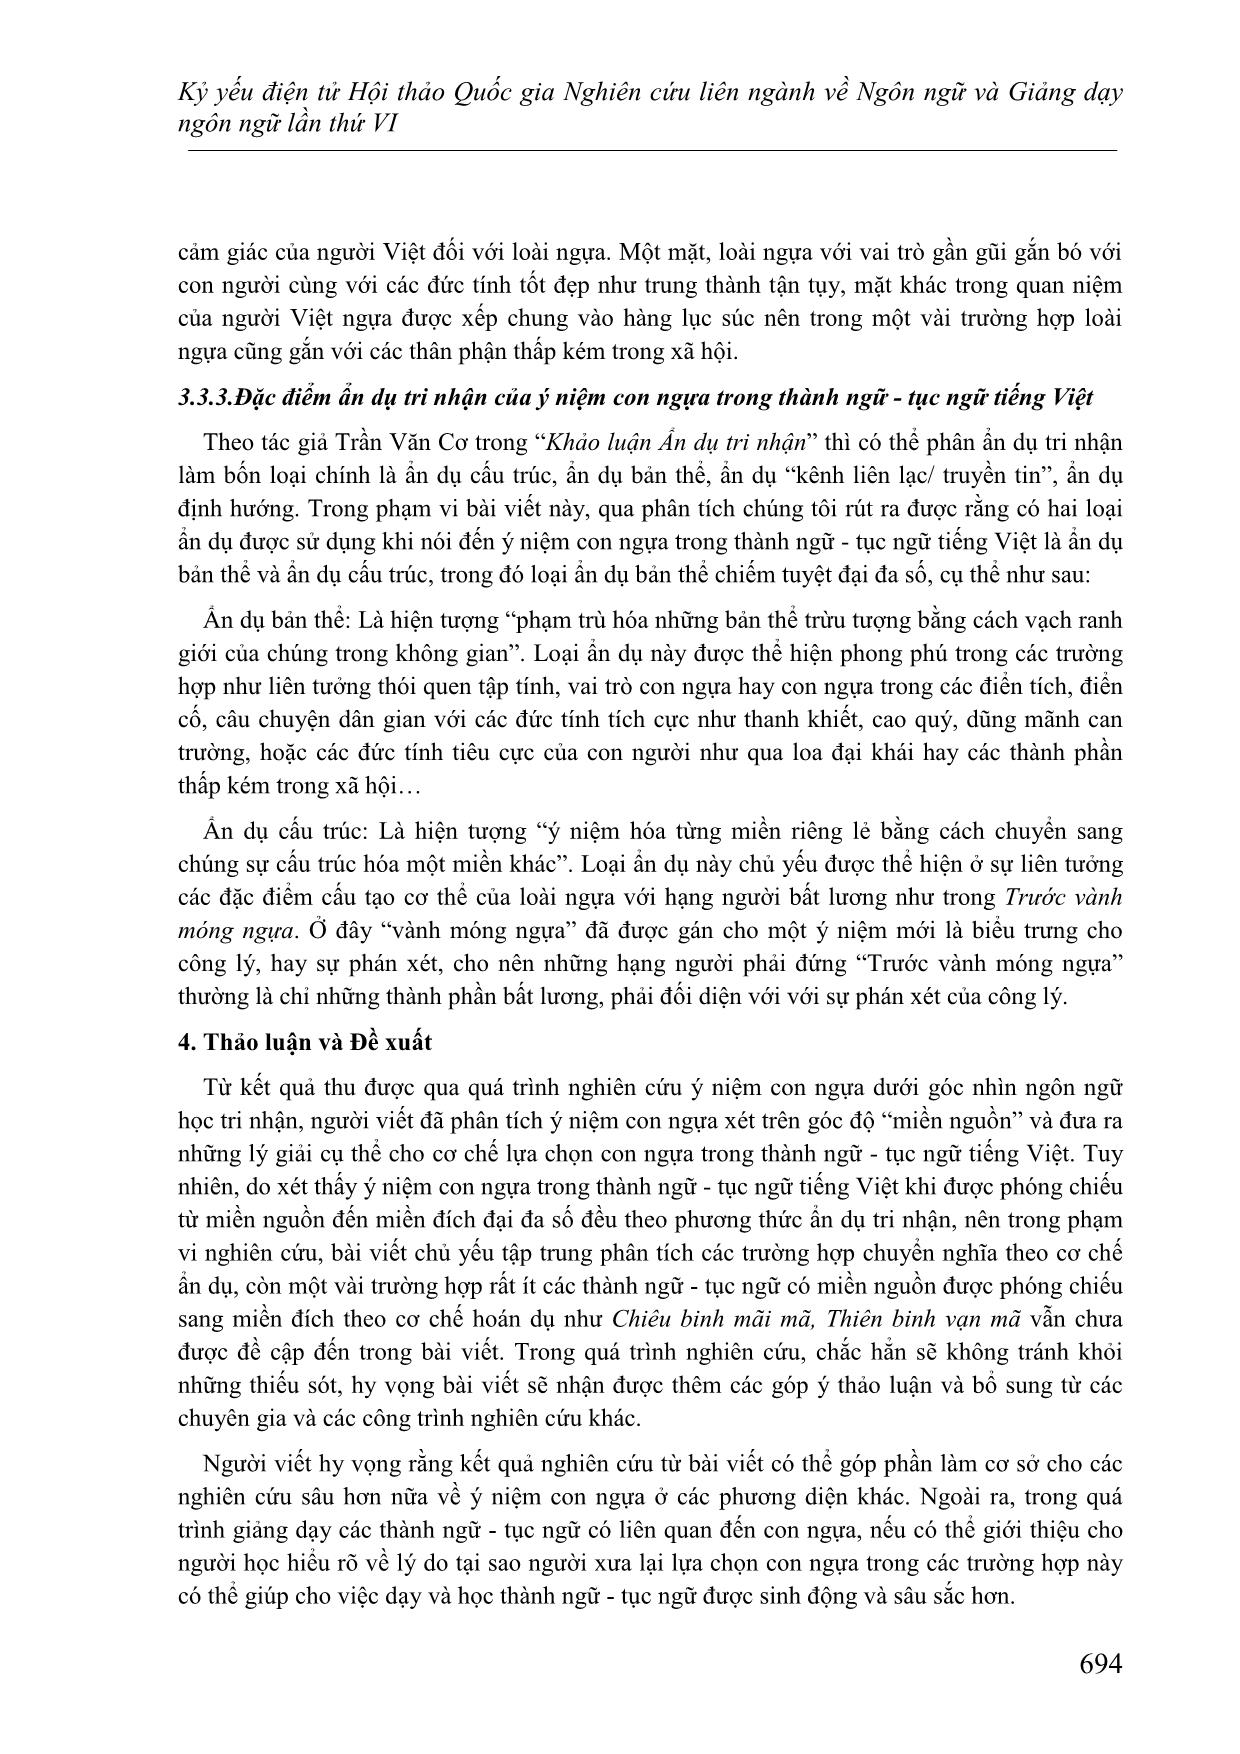 Một cách kiến giải về hình ảnh con ngựa trong thành ngữ-Tục ngữ Tiếng Việt dưới góc nhìn ngôn ngữ học tri nhận trang 8